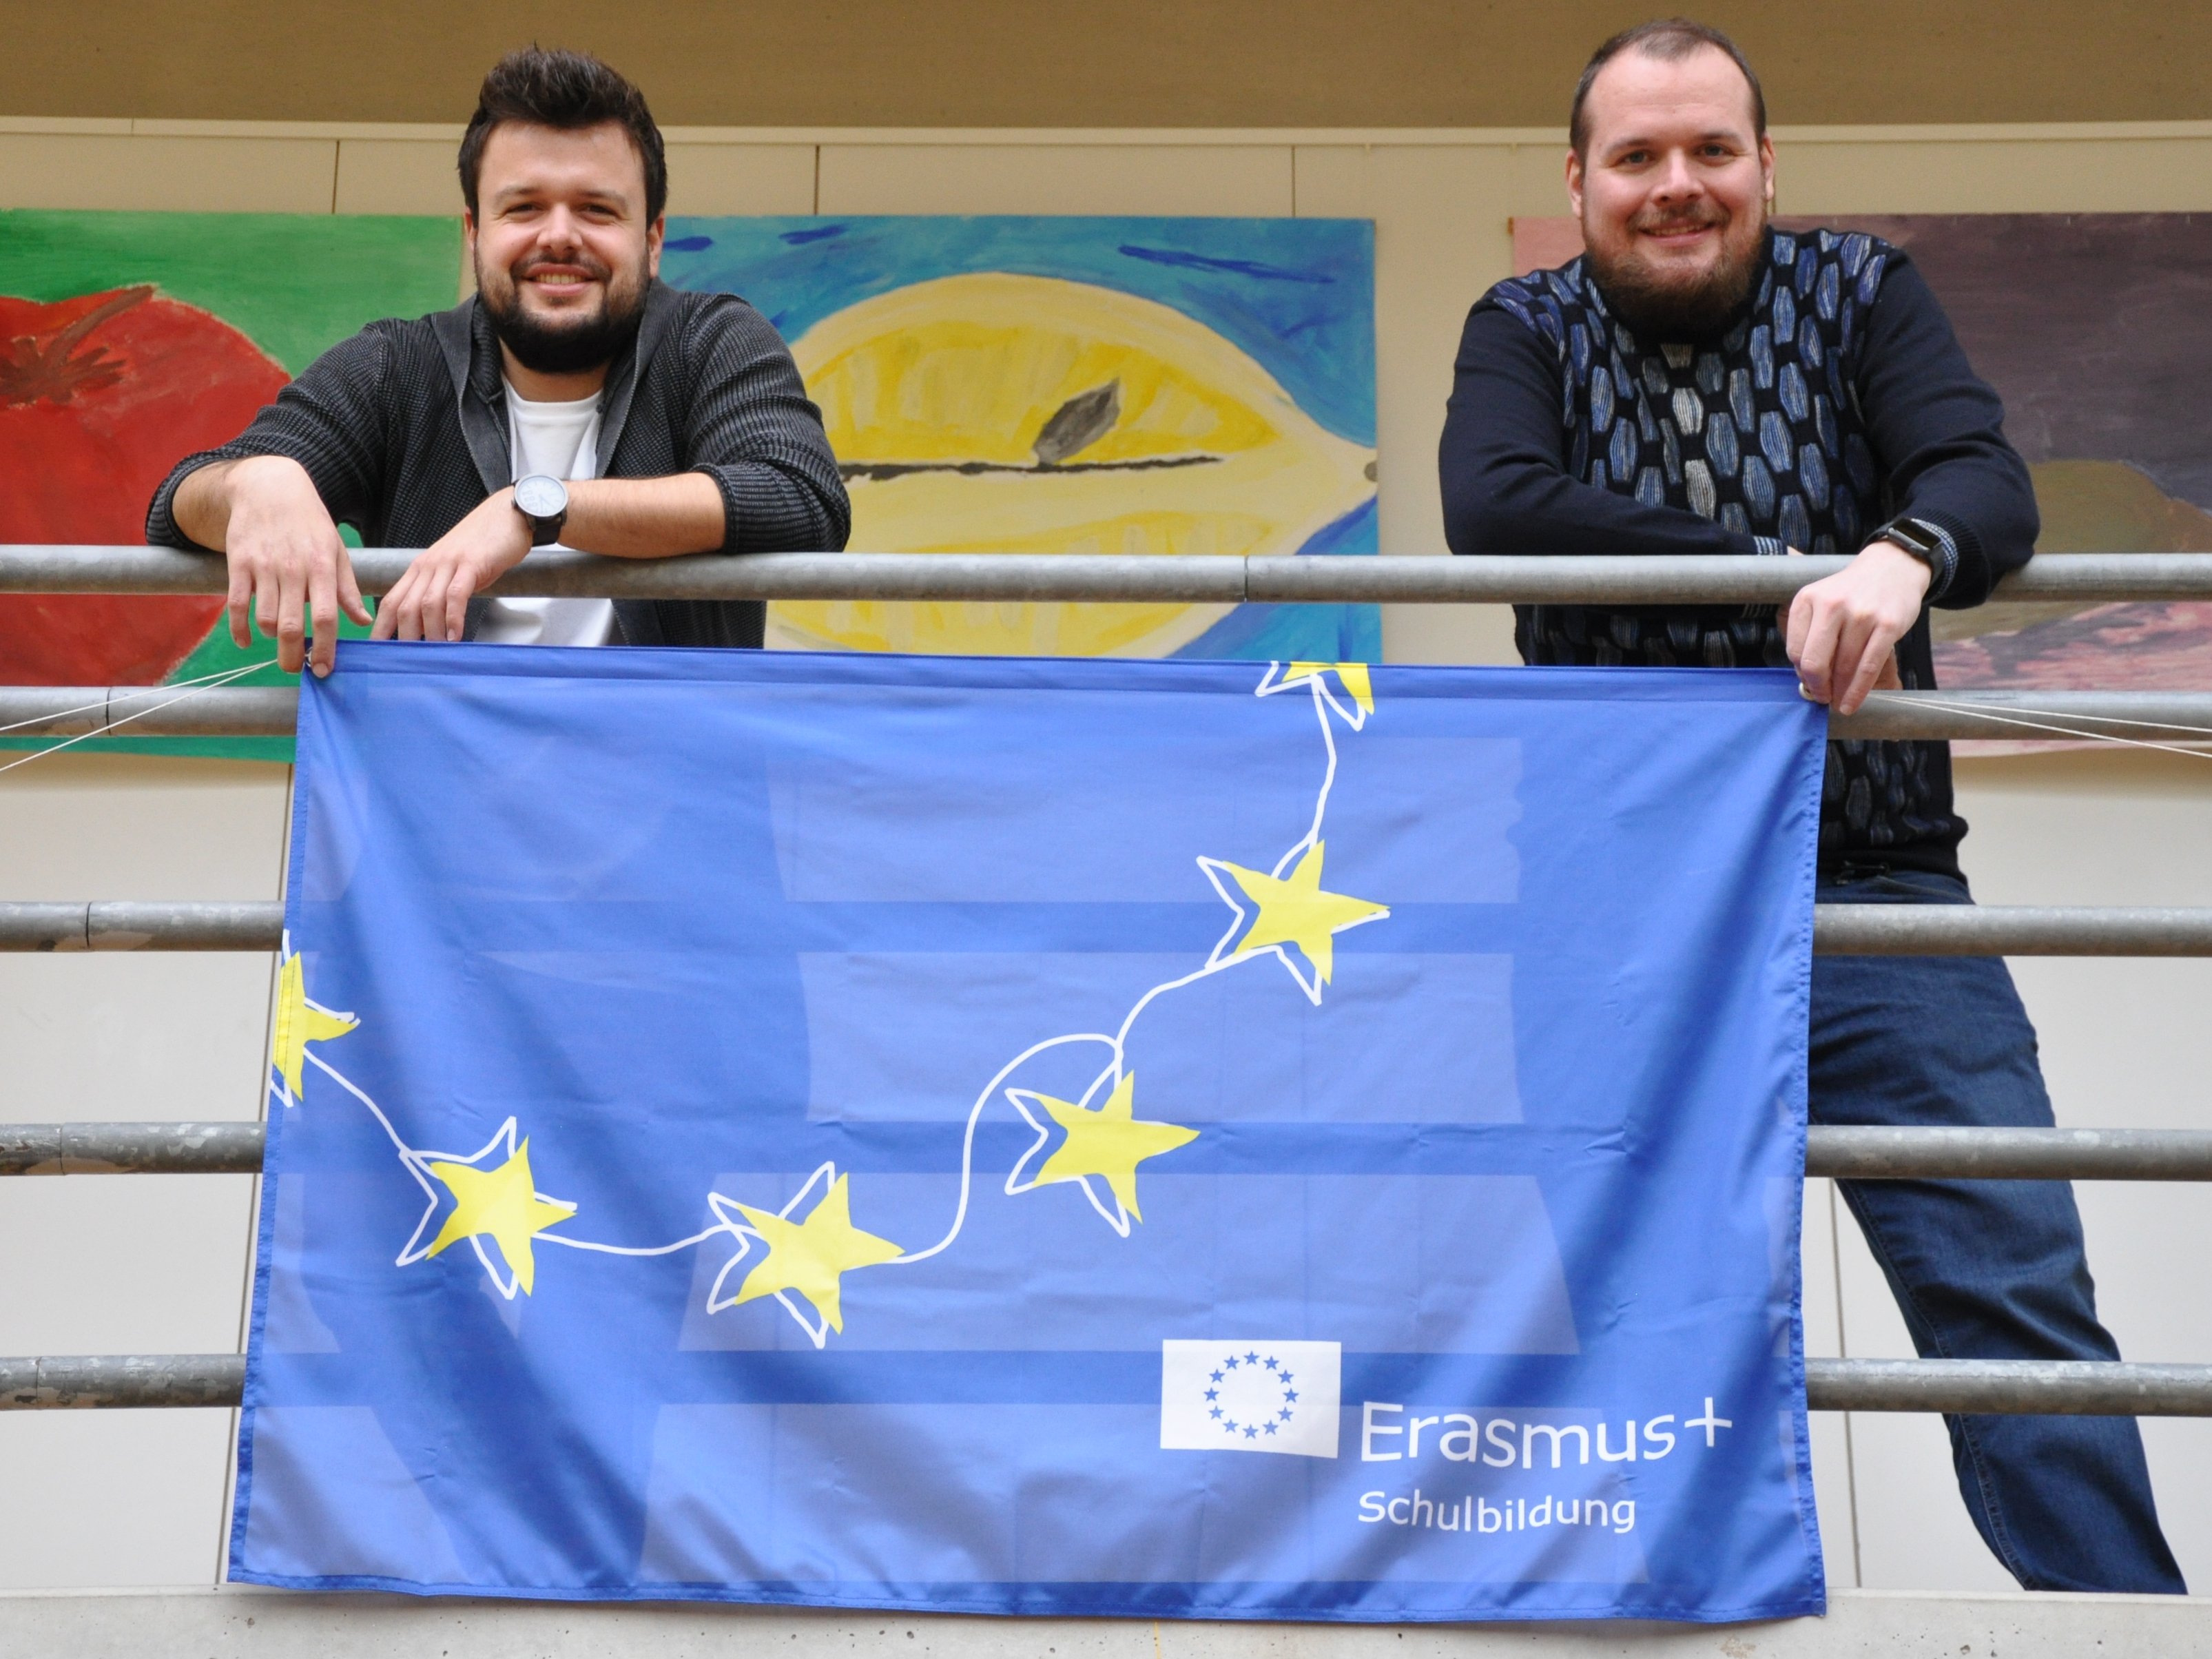 Erasmus-Fahne, Herr Abele und Herr Hepperle